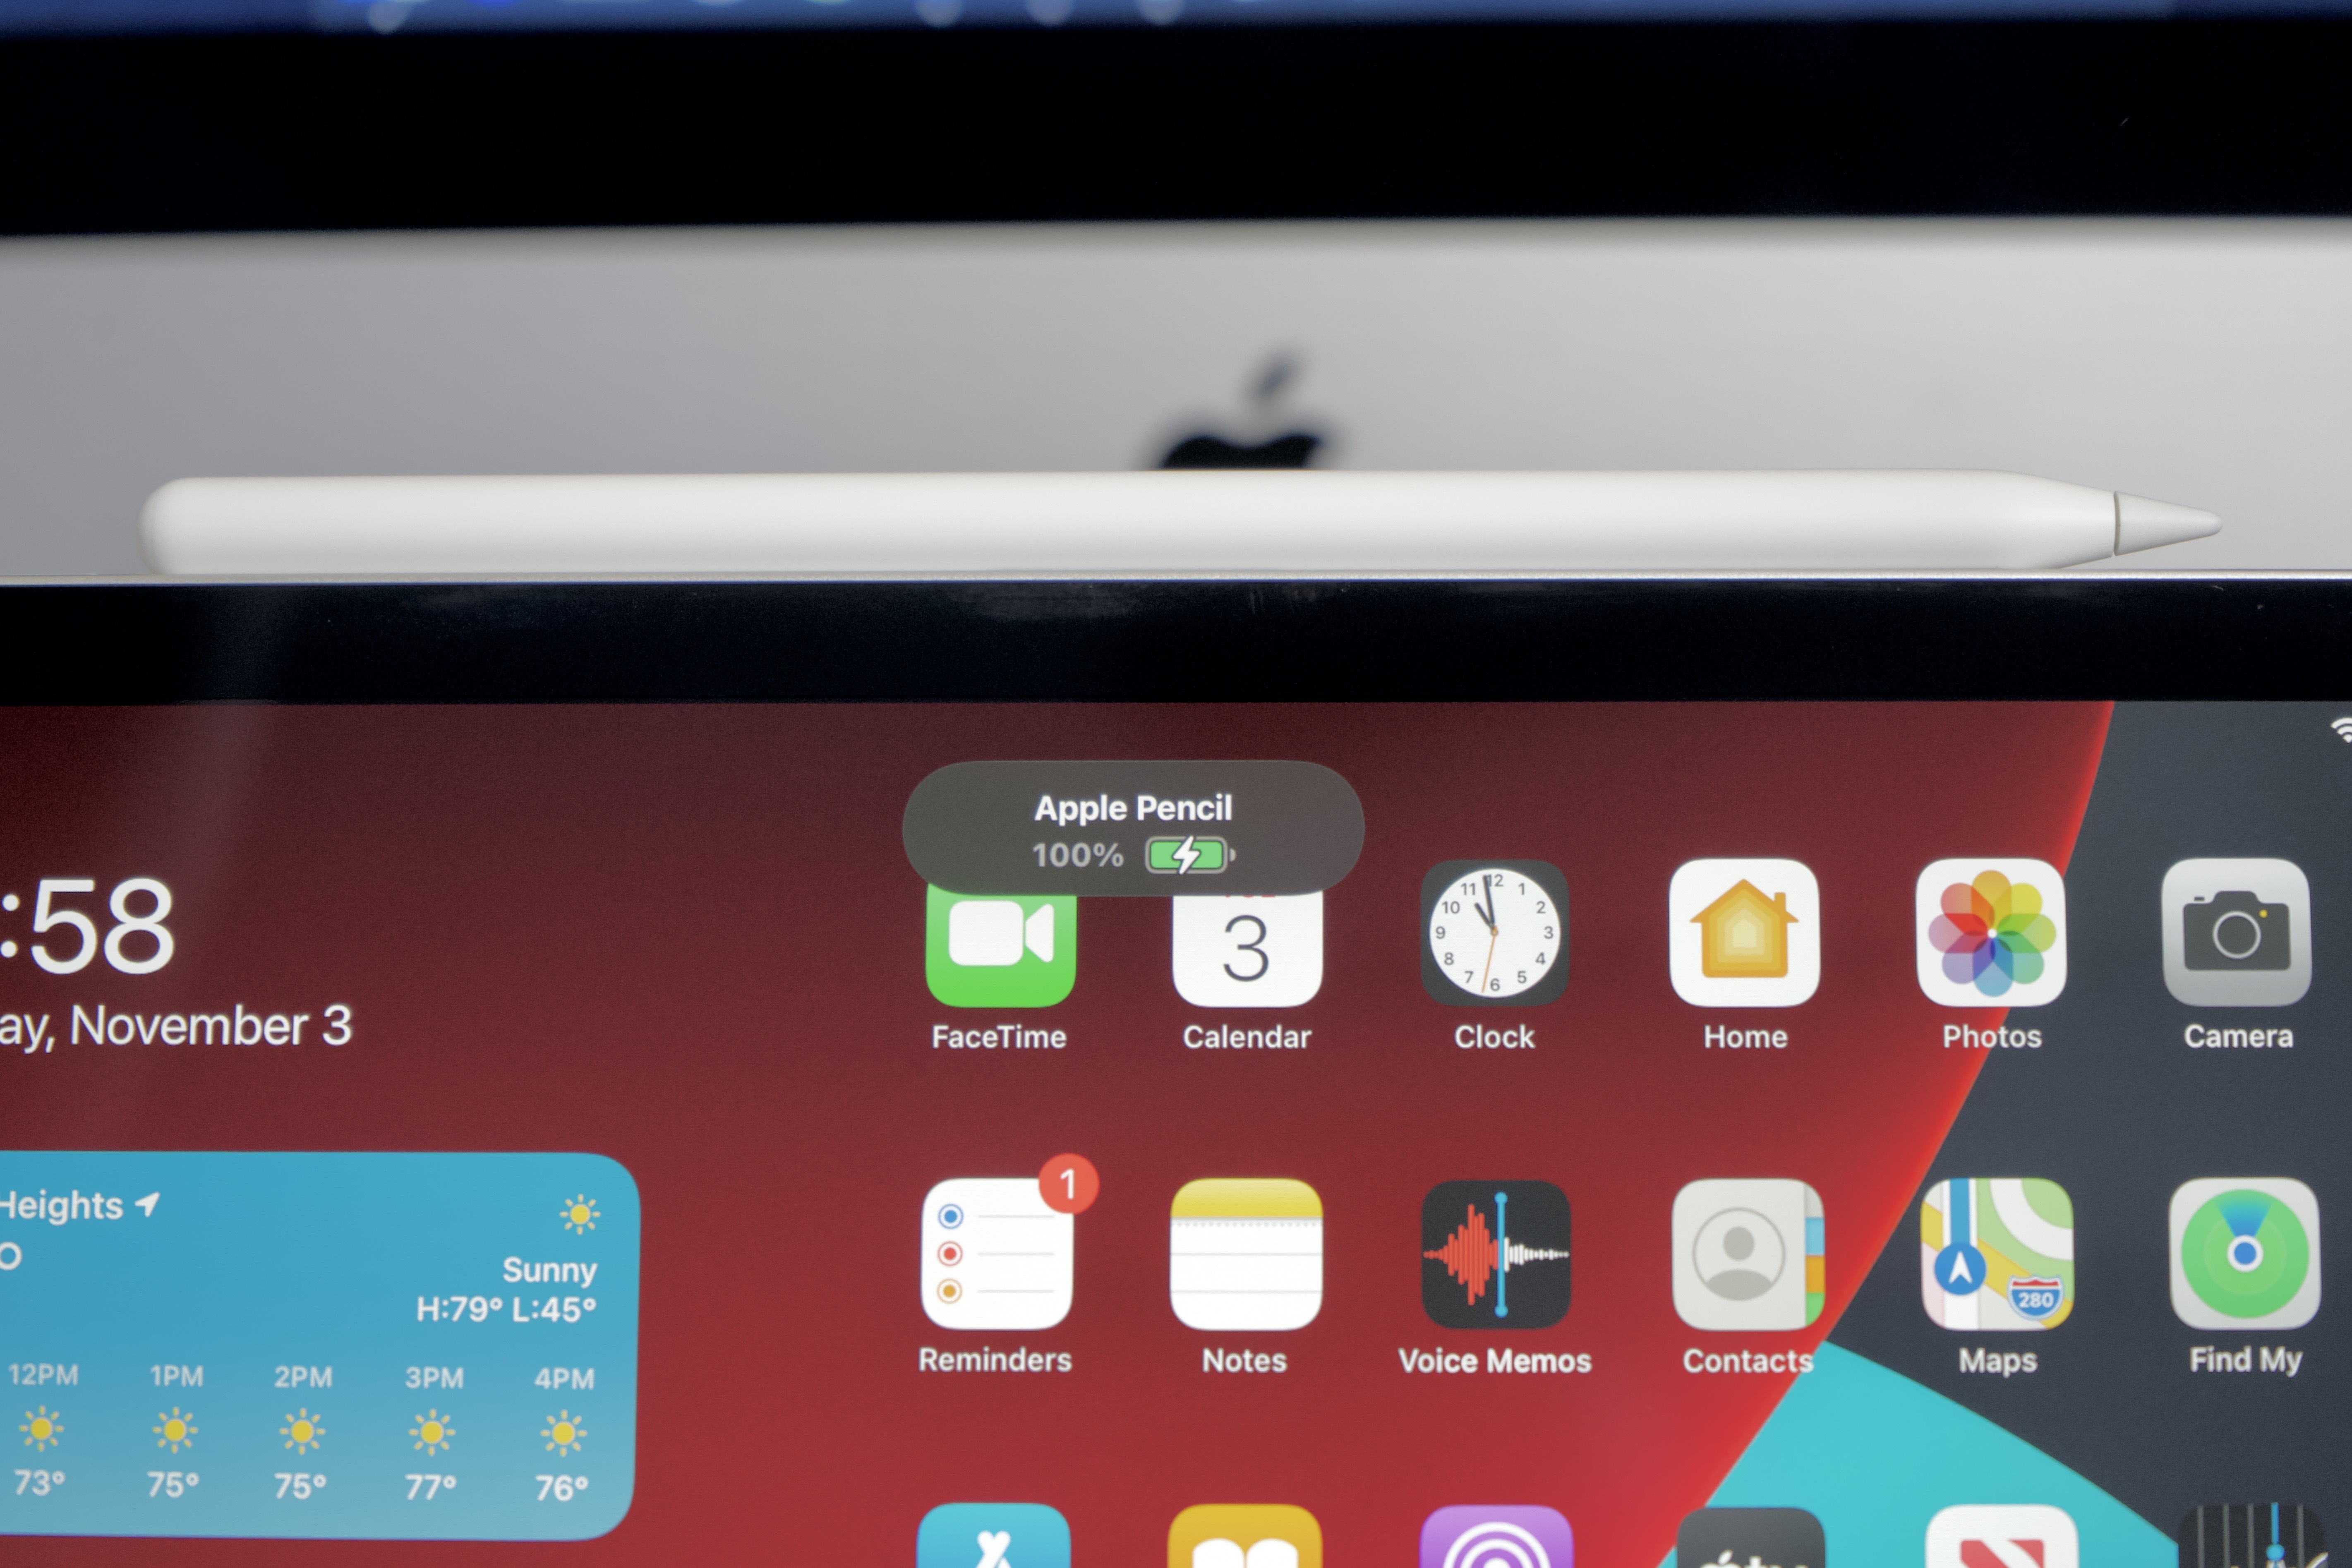 Test de l'iPad Air (2020) : le meilleur de l'iPad Pro dans une